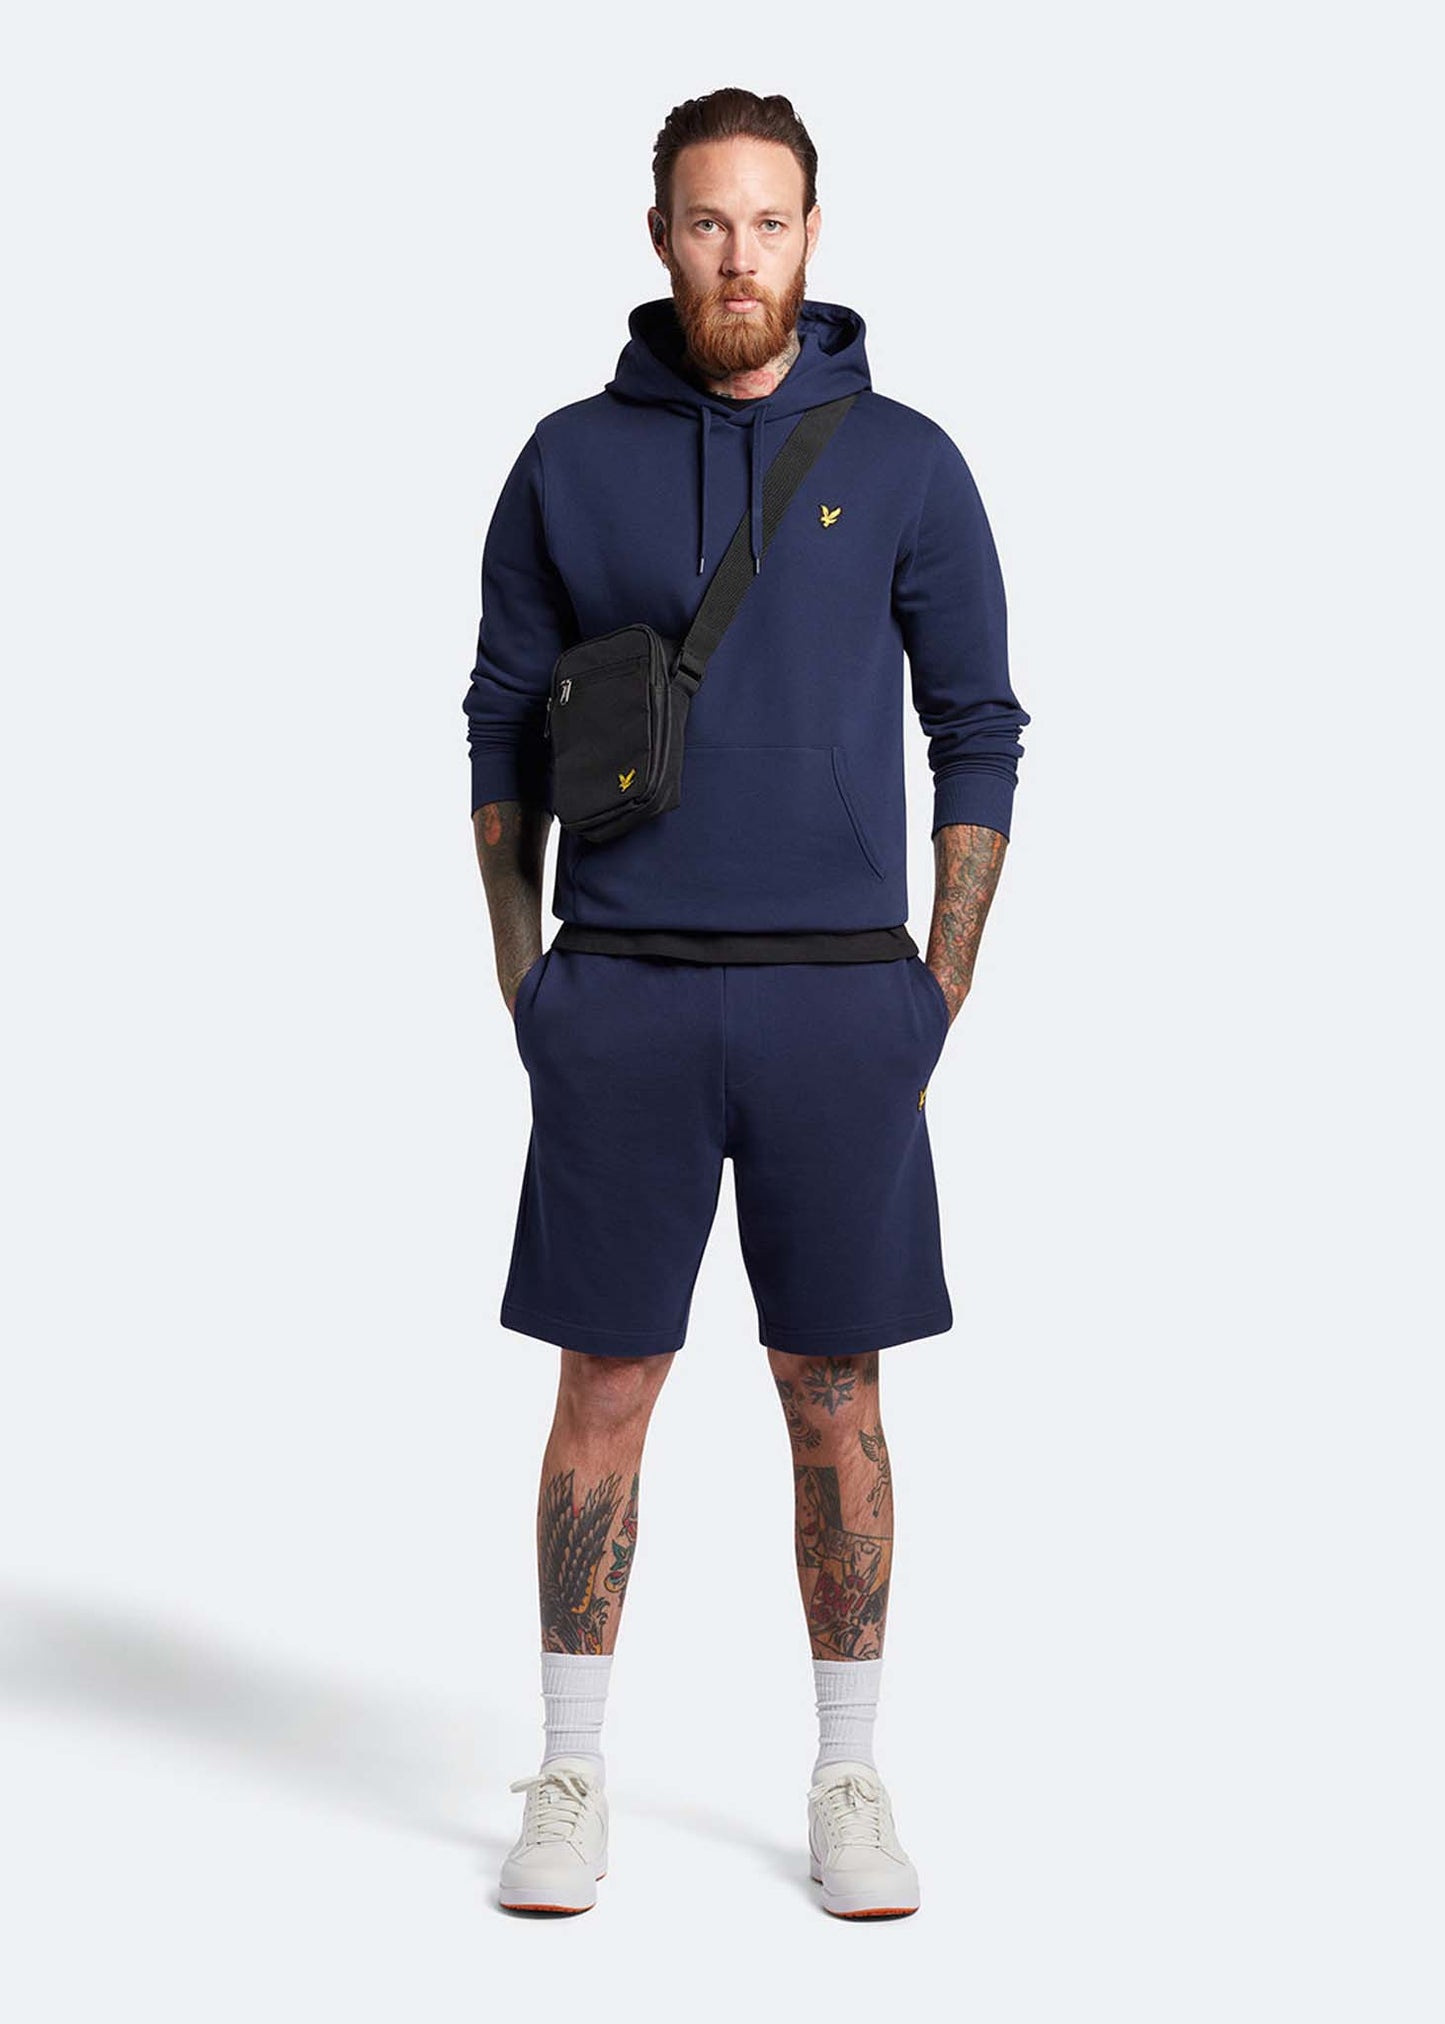 Pullover hoodie - navy